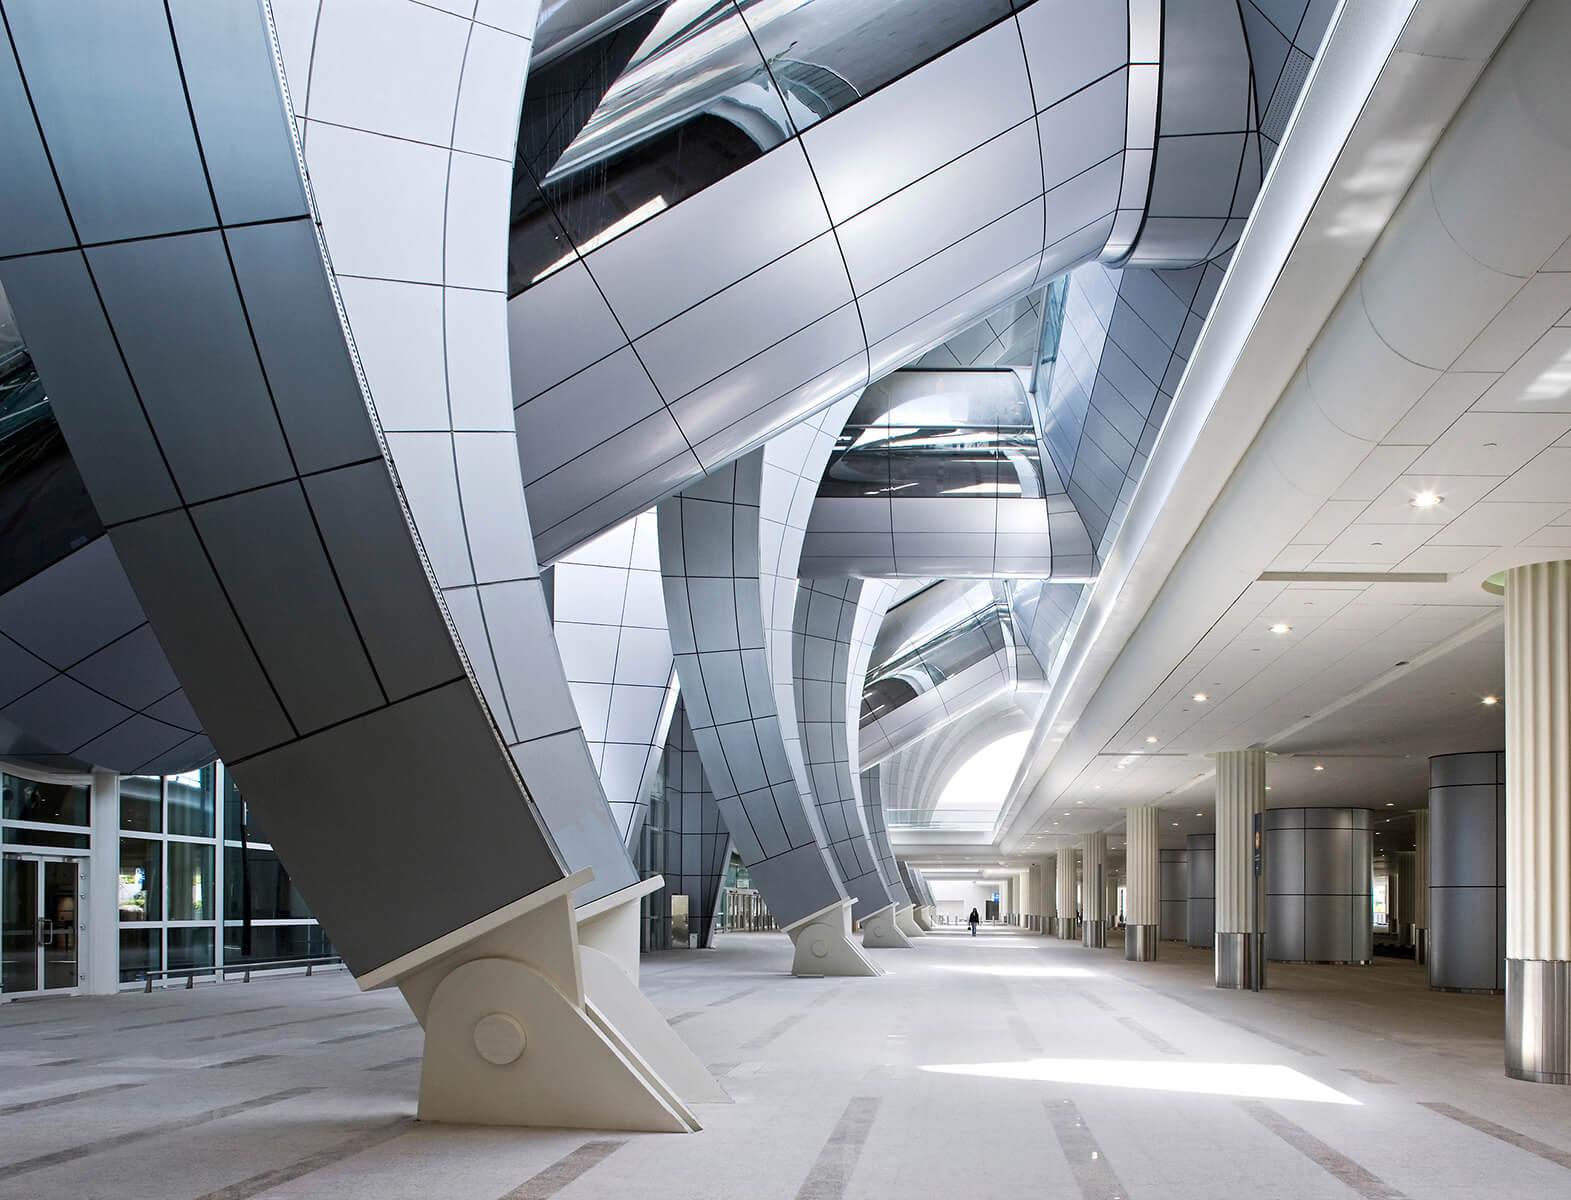 Architecture Photography in Dubai 